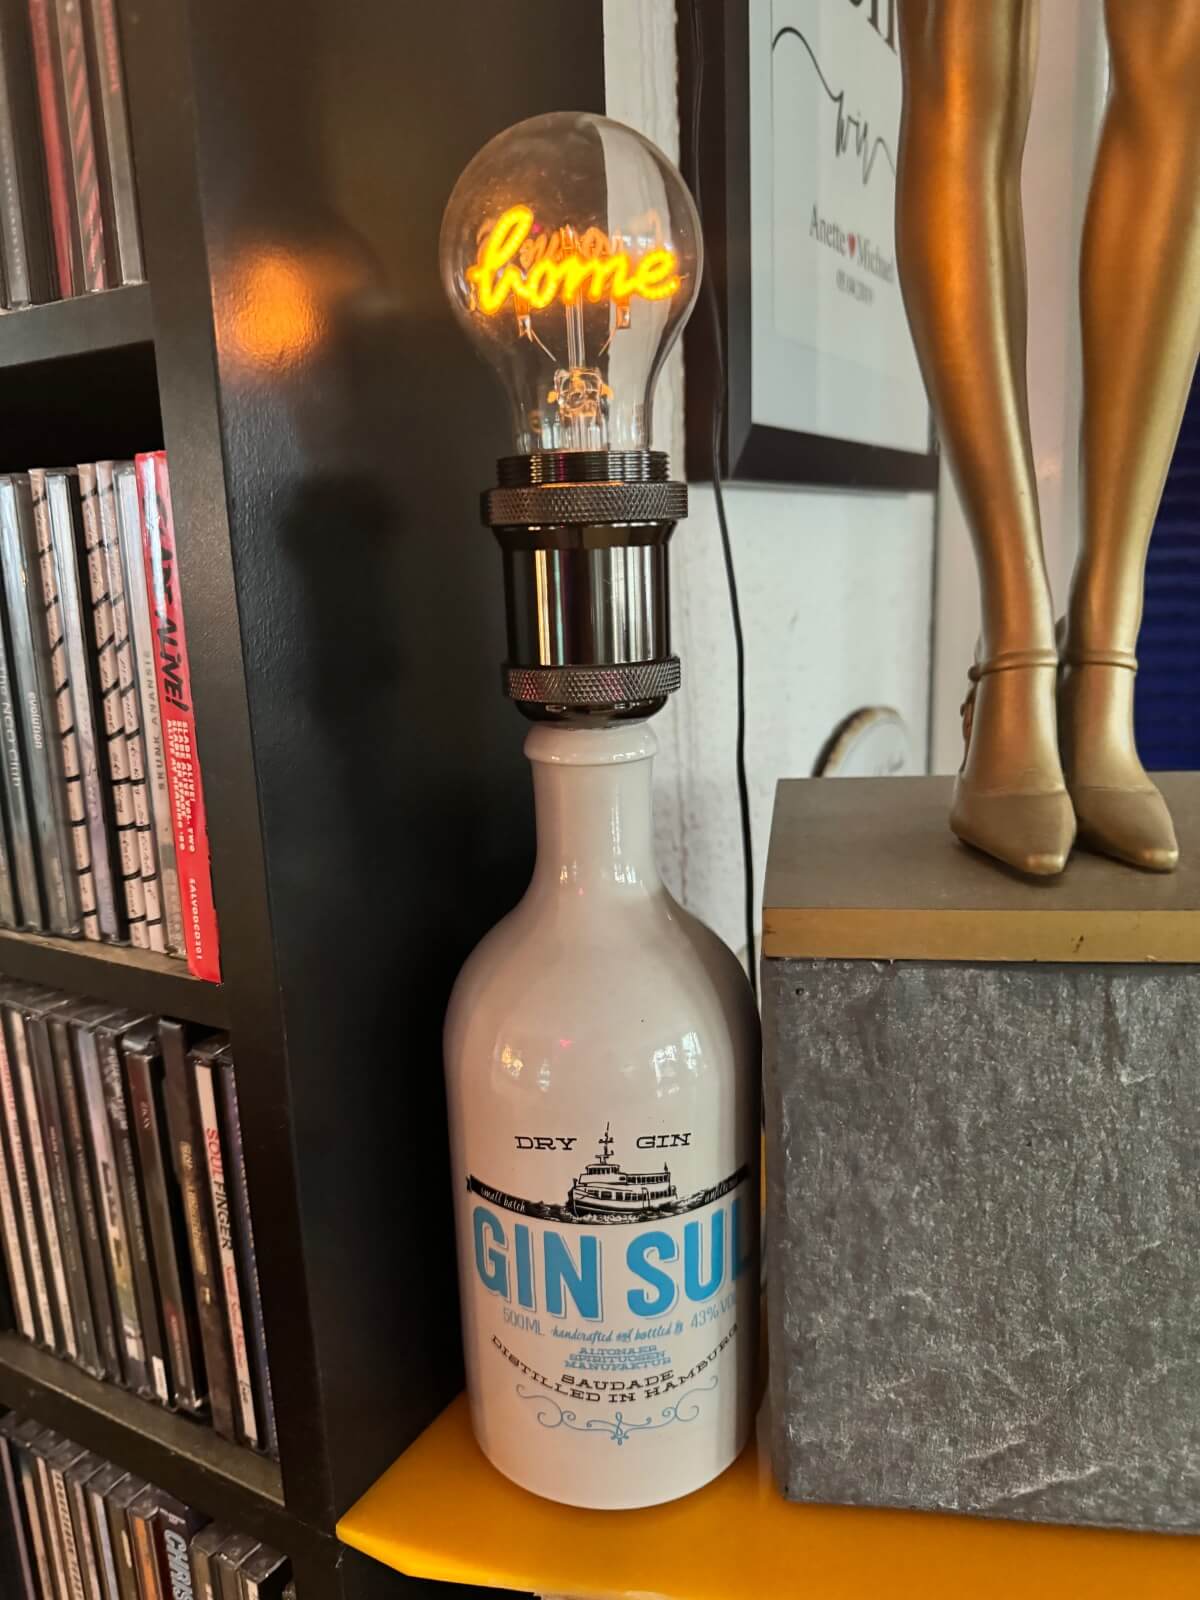 Lampe aus einer Gin-Flasche gebaut